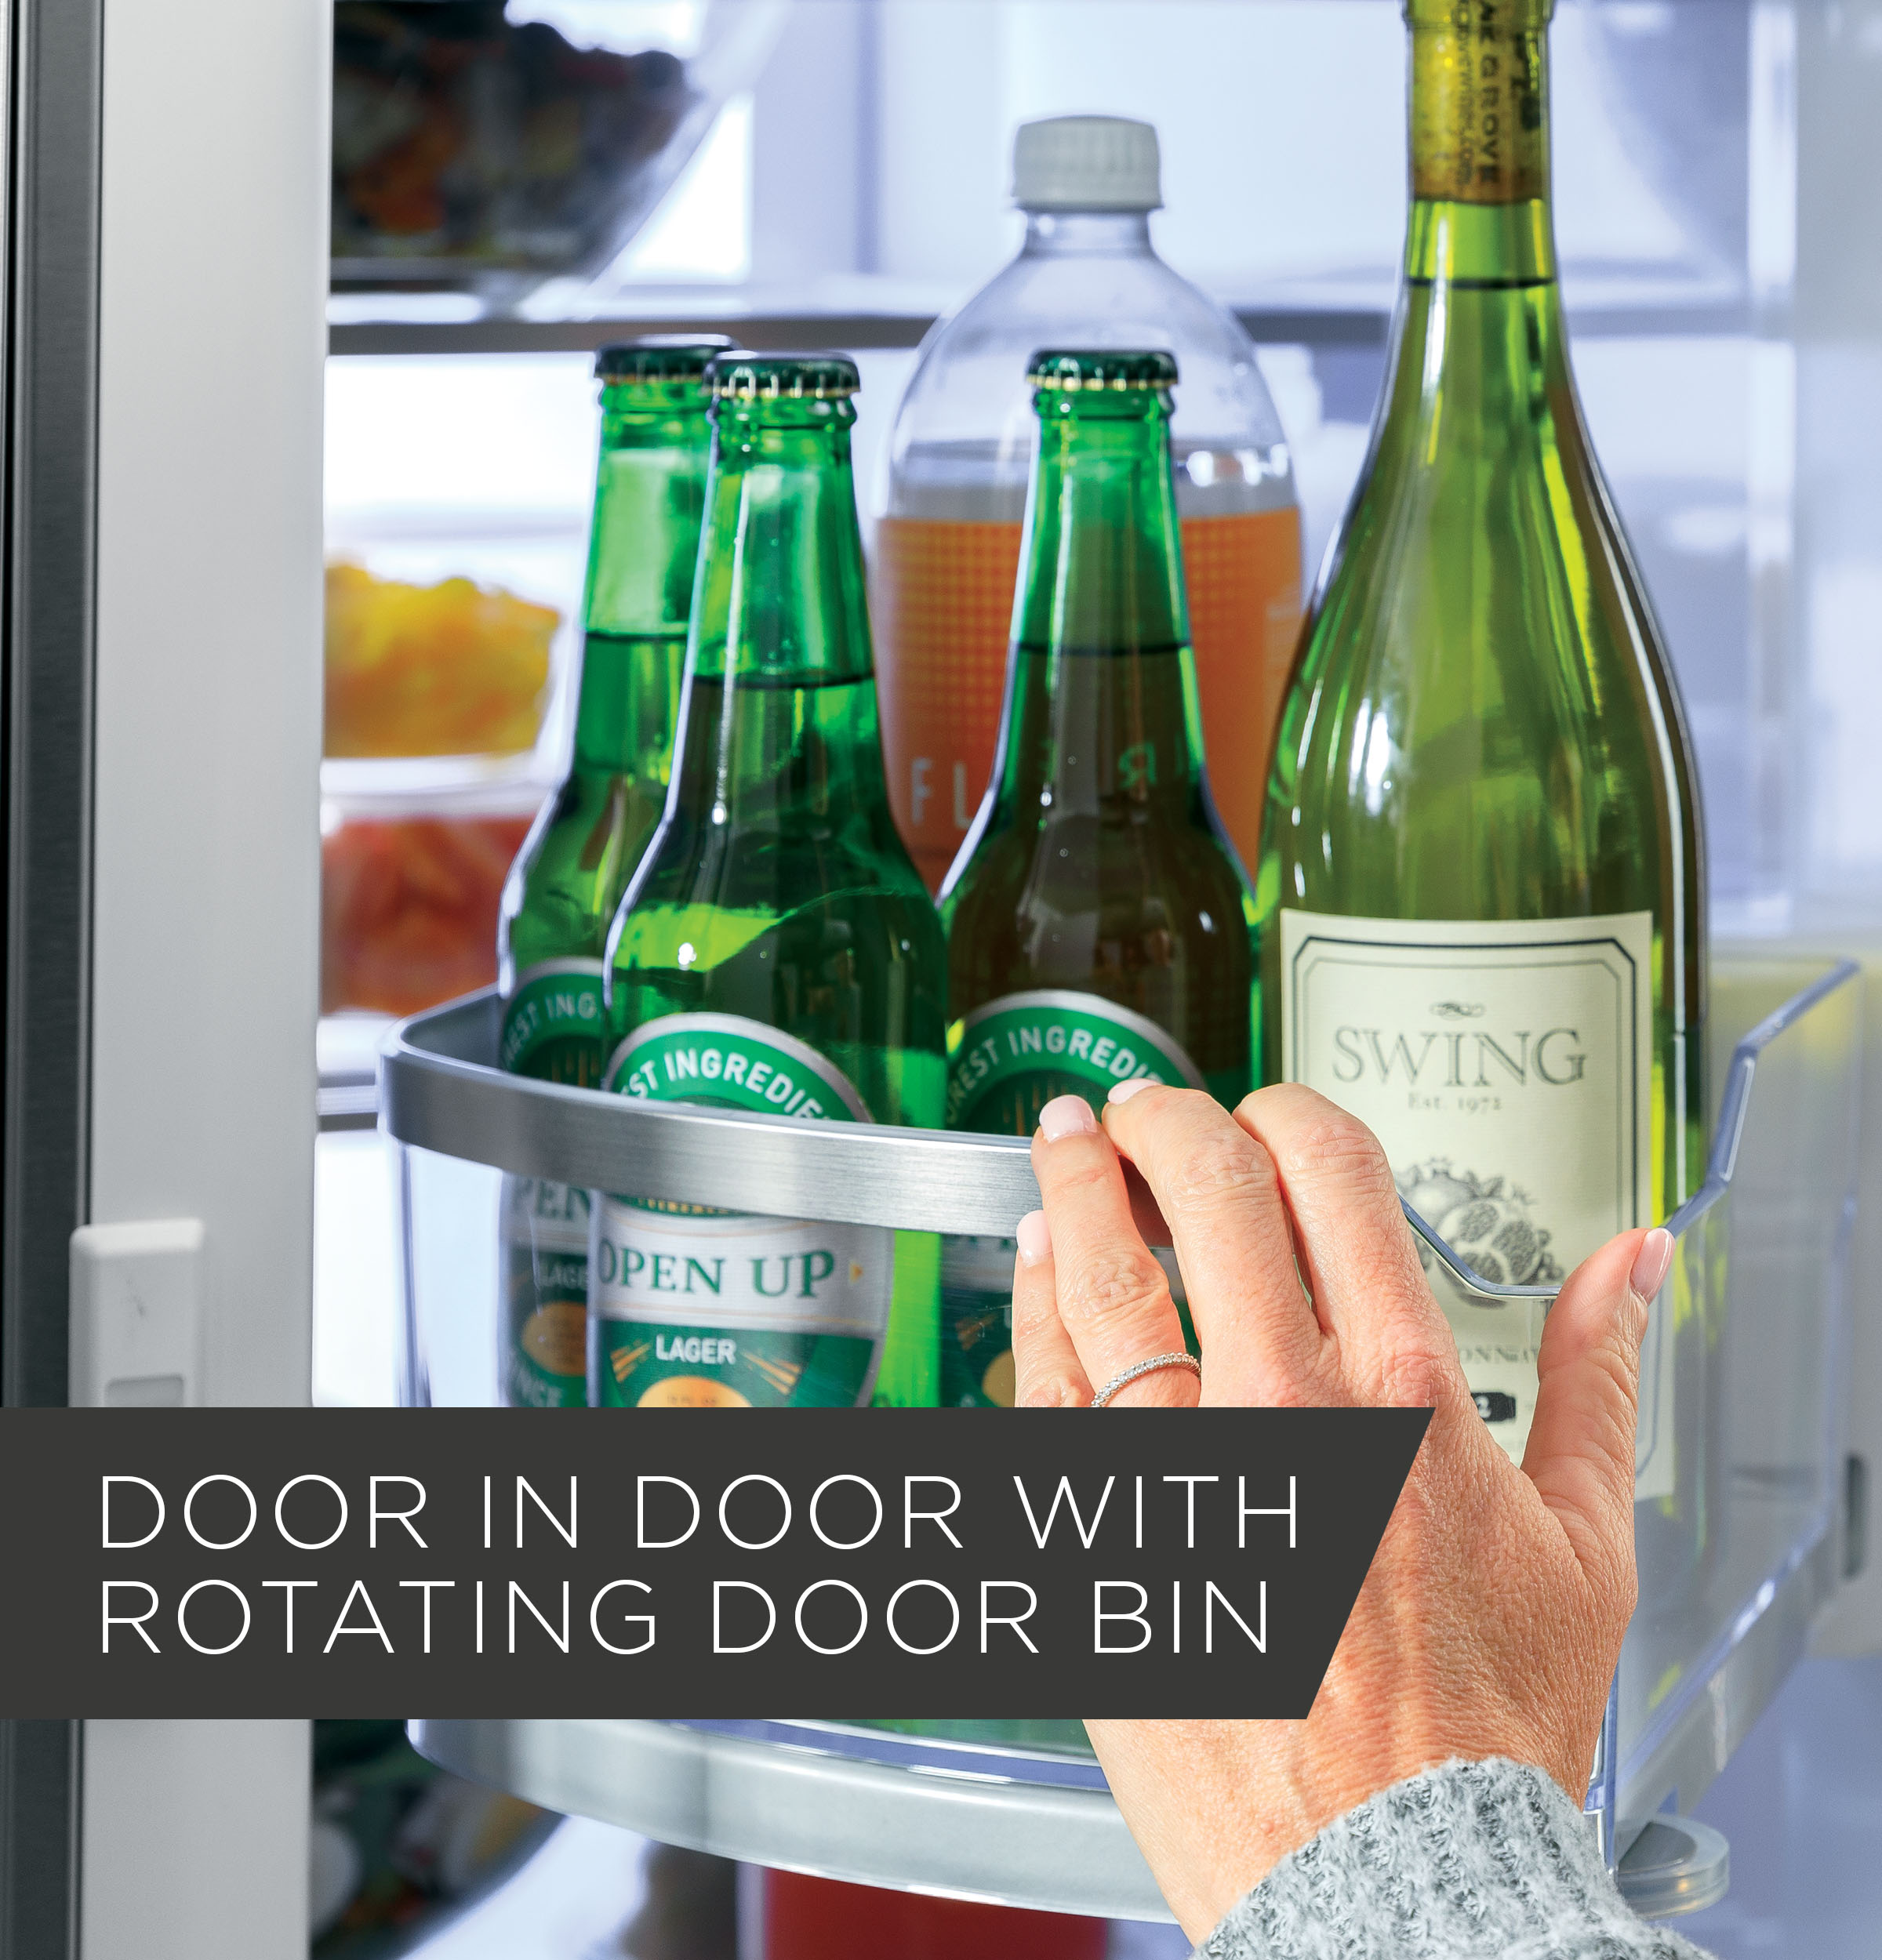 Profile 27.9 cu. ft. Smart 4-Door French Door Refrigerator with Door in  Door in Fingerprint Resistant Stainless Steel